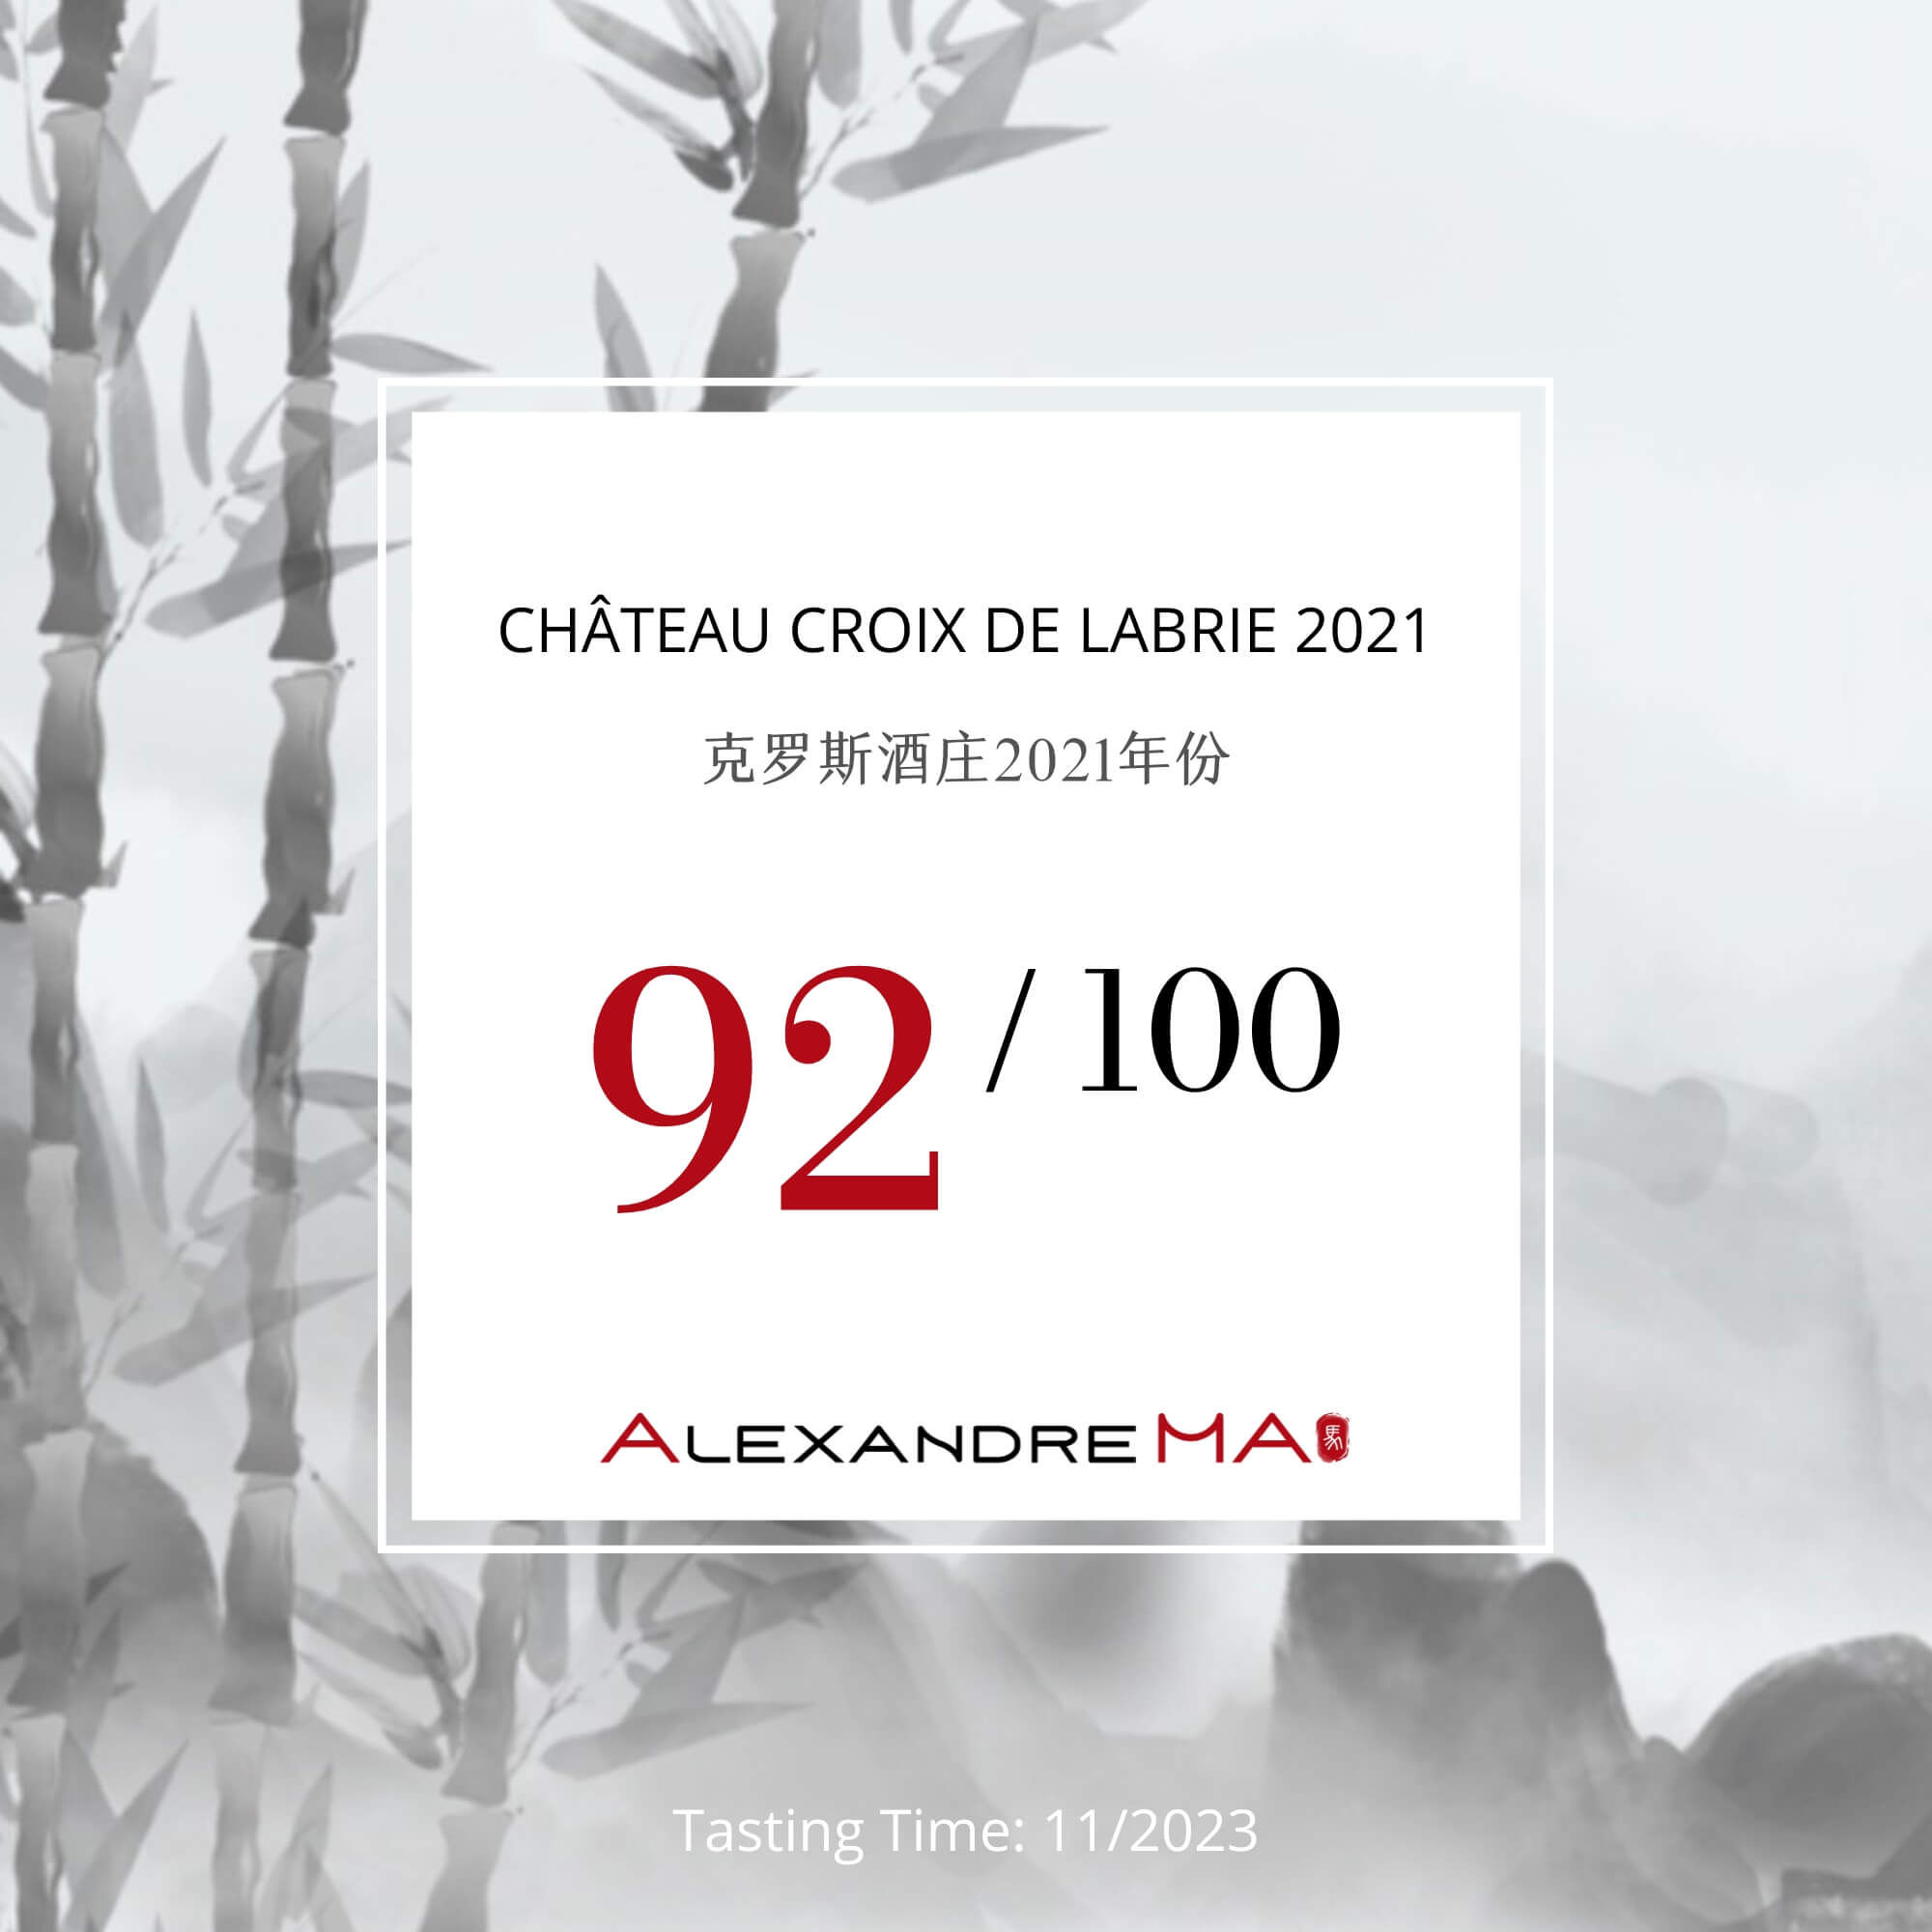 Château Croix de Labrie 2021 - Alexandre MA